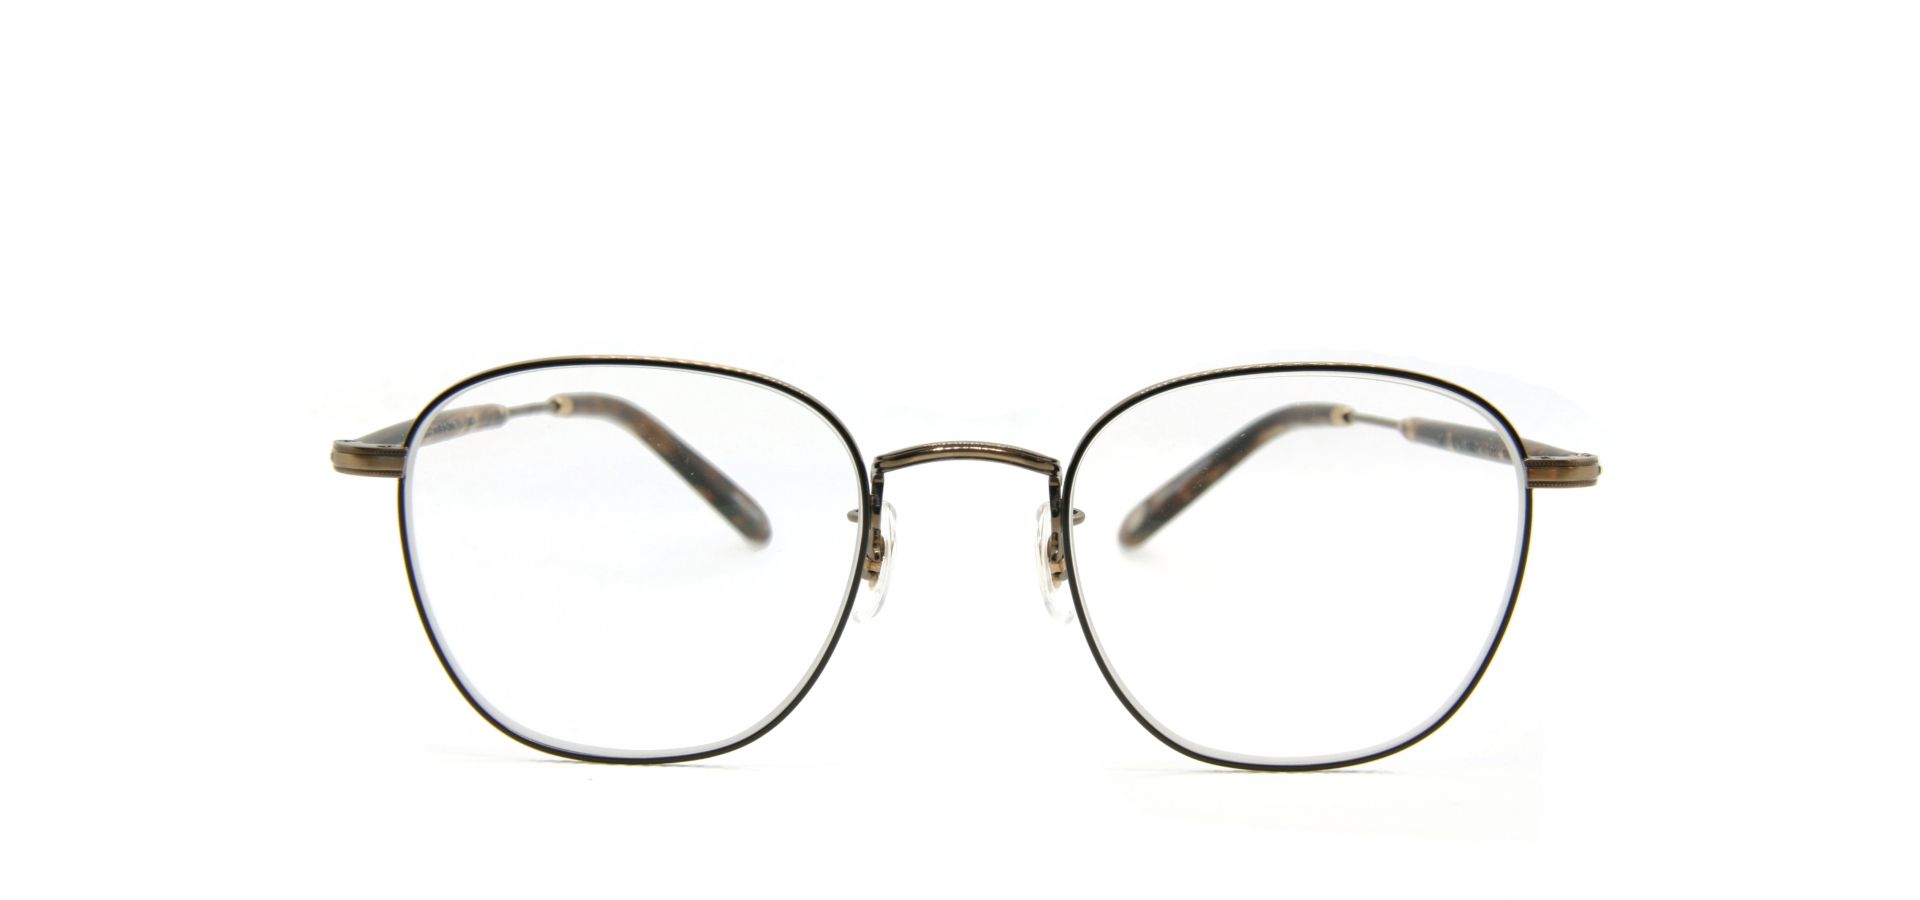 Korekcijska očala Garrett Leight GRANT M 49 BRUSHED GLD BRWN: Velikost: 49/22, Spol: unisex, Material: acetat/kovinska